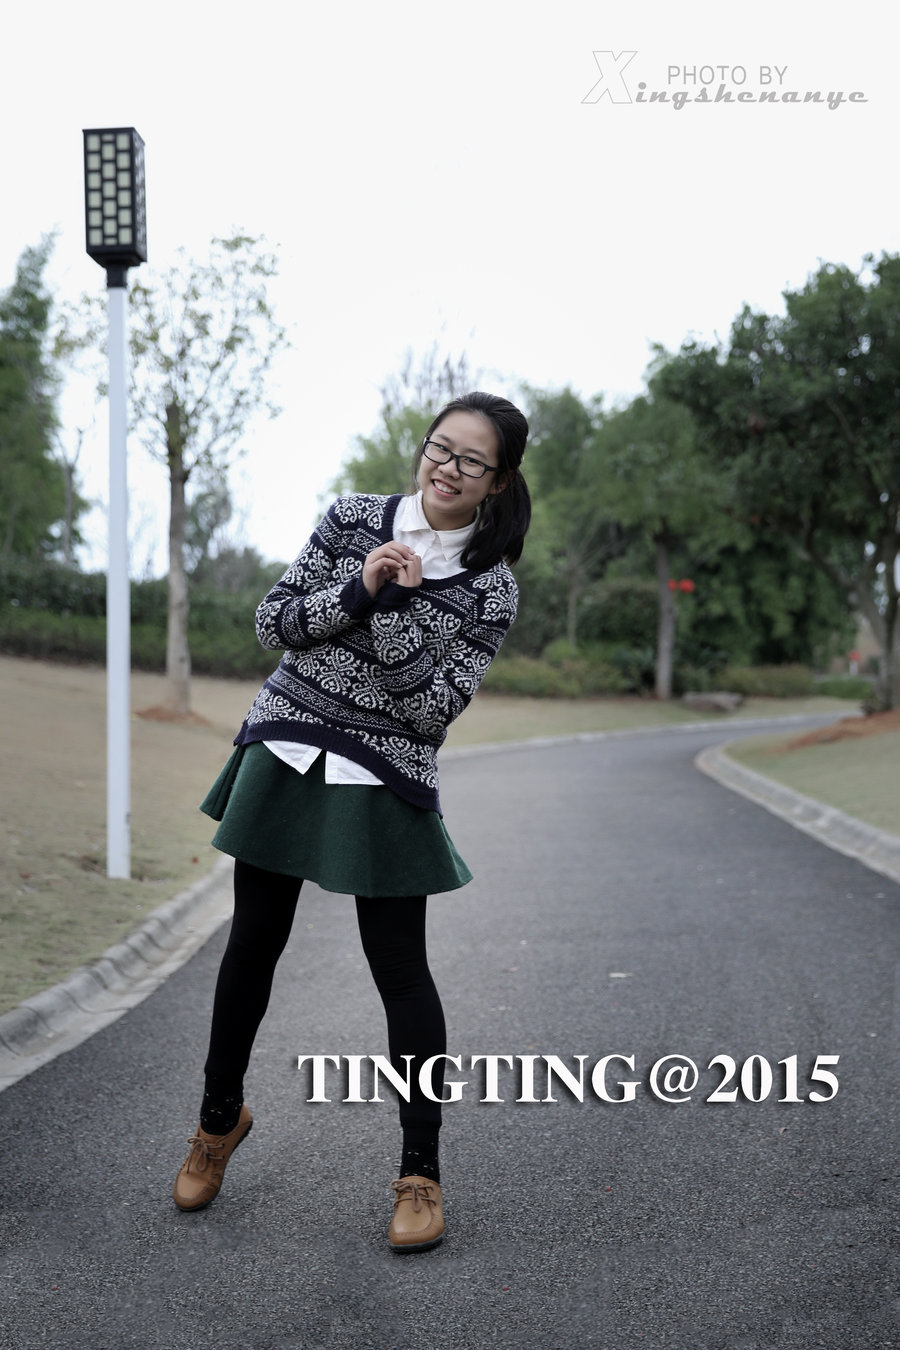  TingTing@2015 